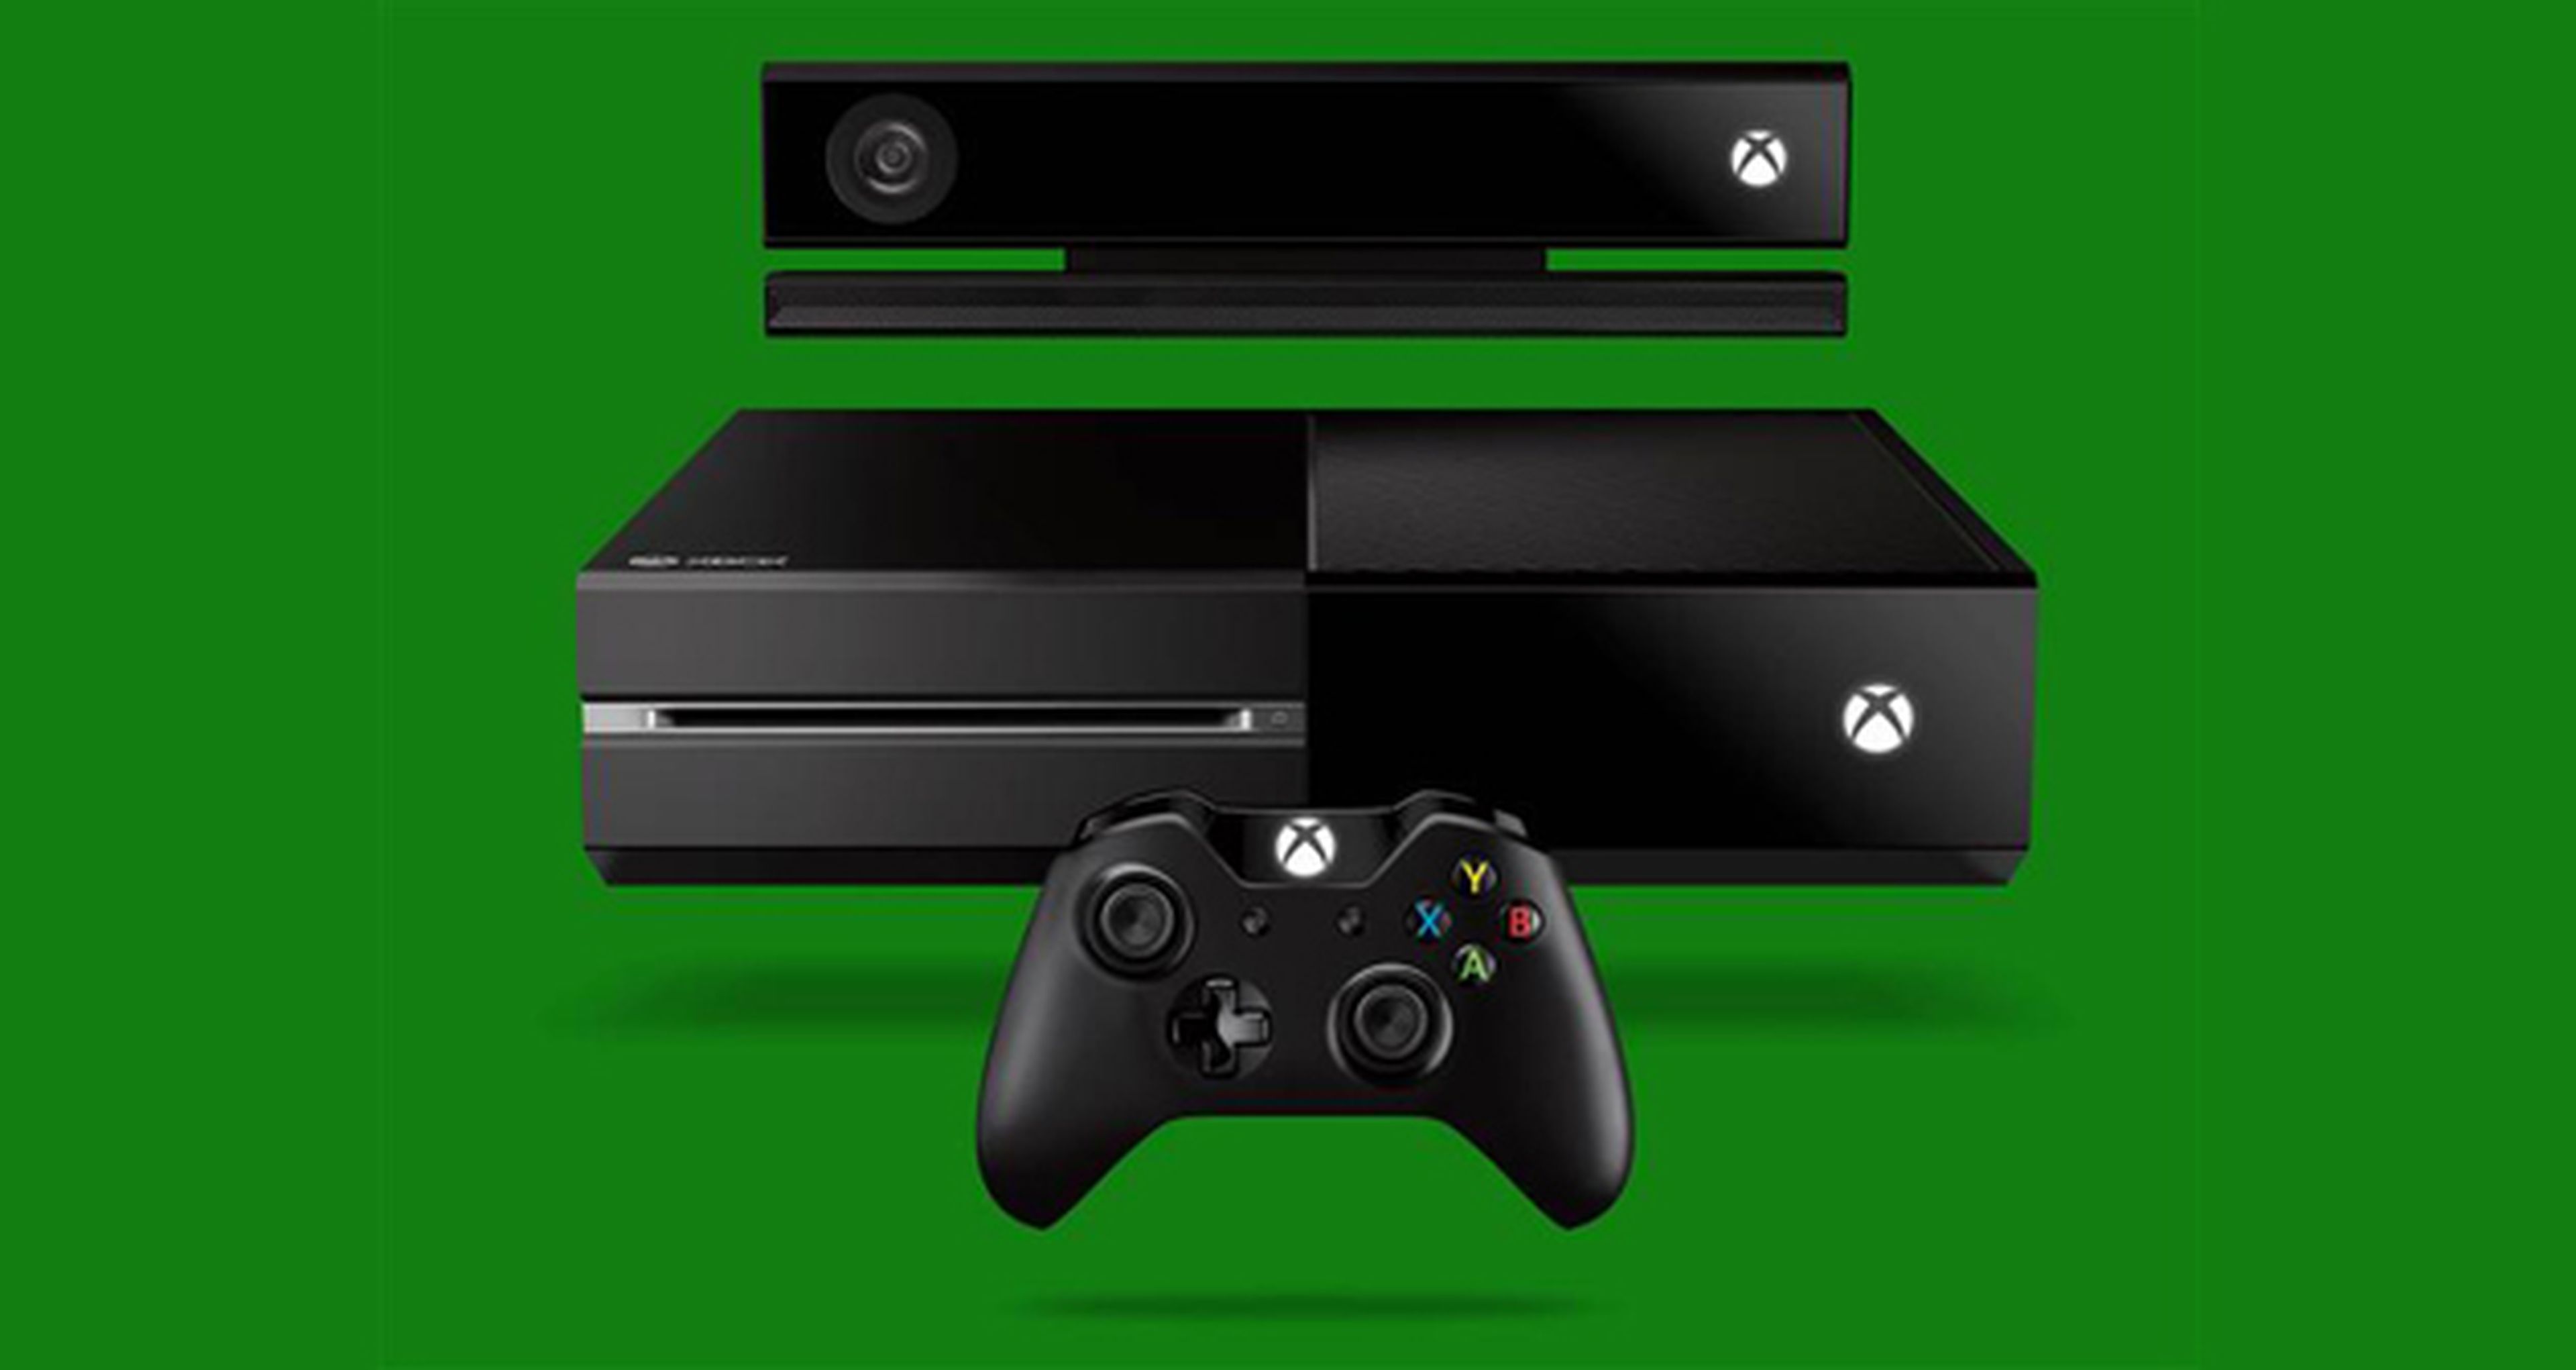 Regalos y sorteos para celebrar el primer año de Xbox One